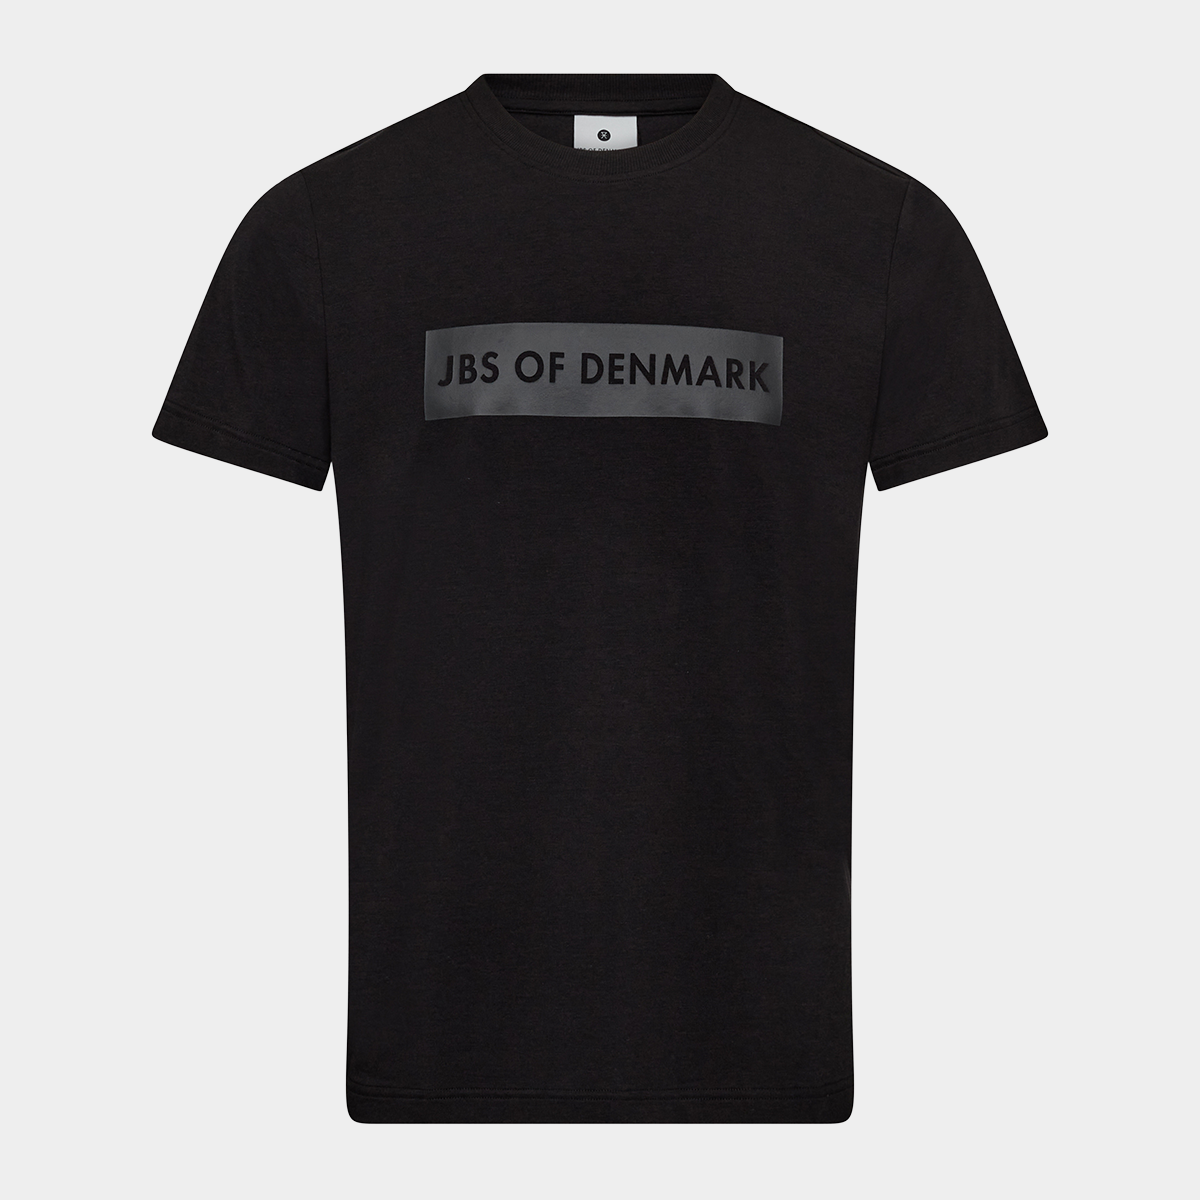 Billede af Sort bambus T-shirt med logo fra JBS of Denmark, XL